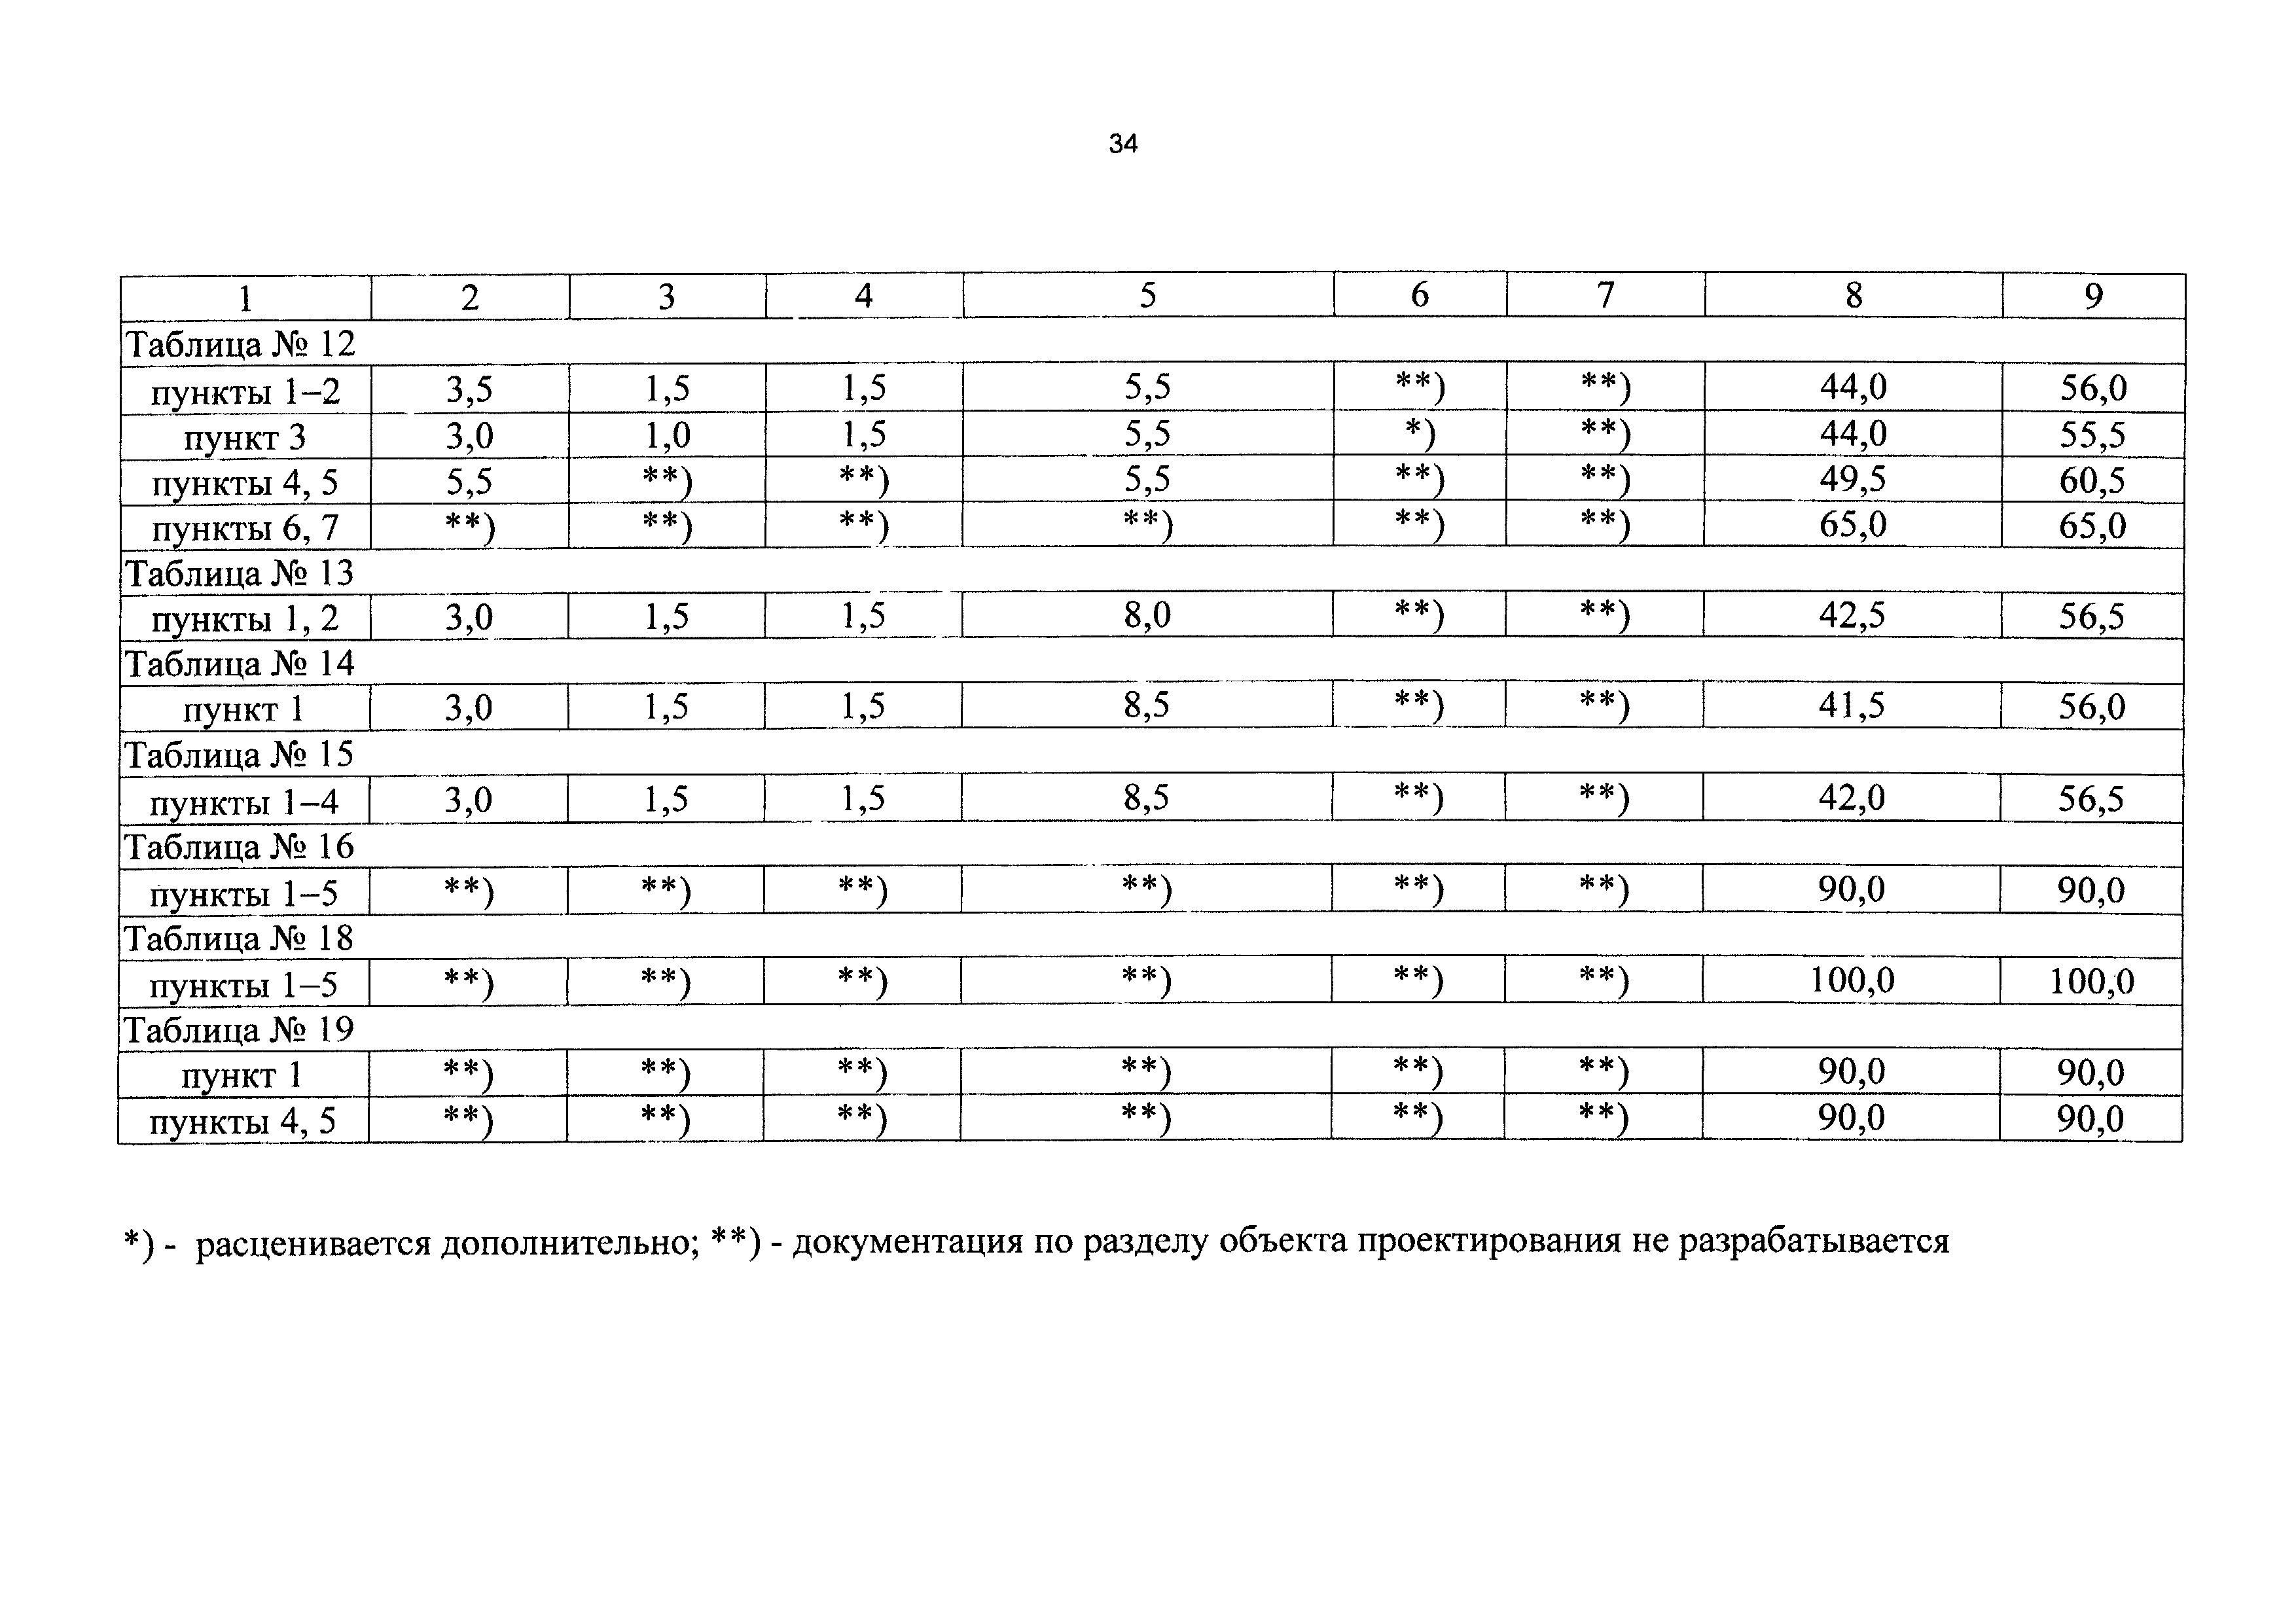 СБЦП 81-2001-14